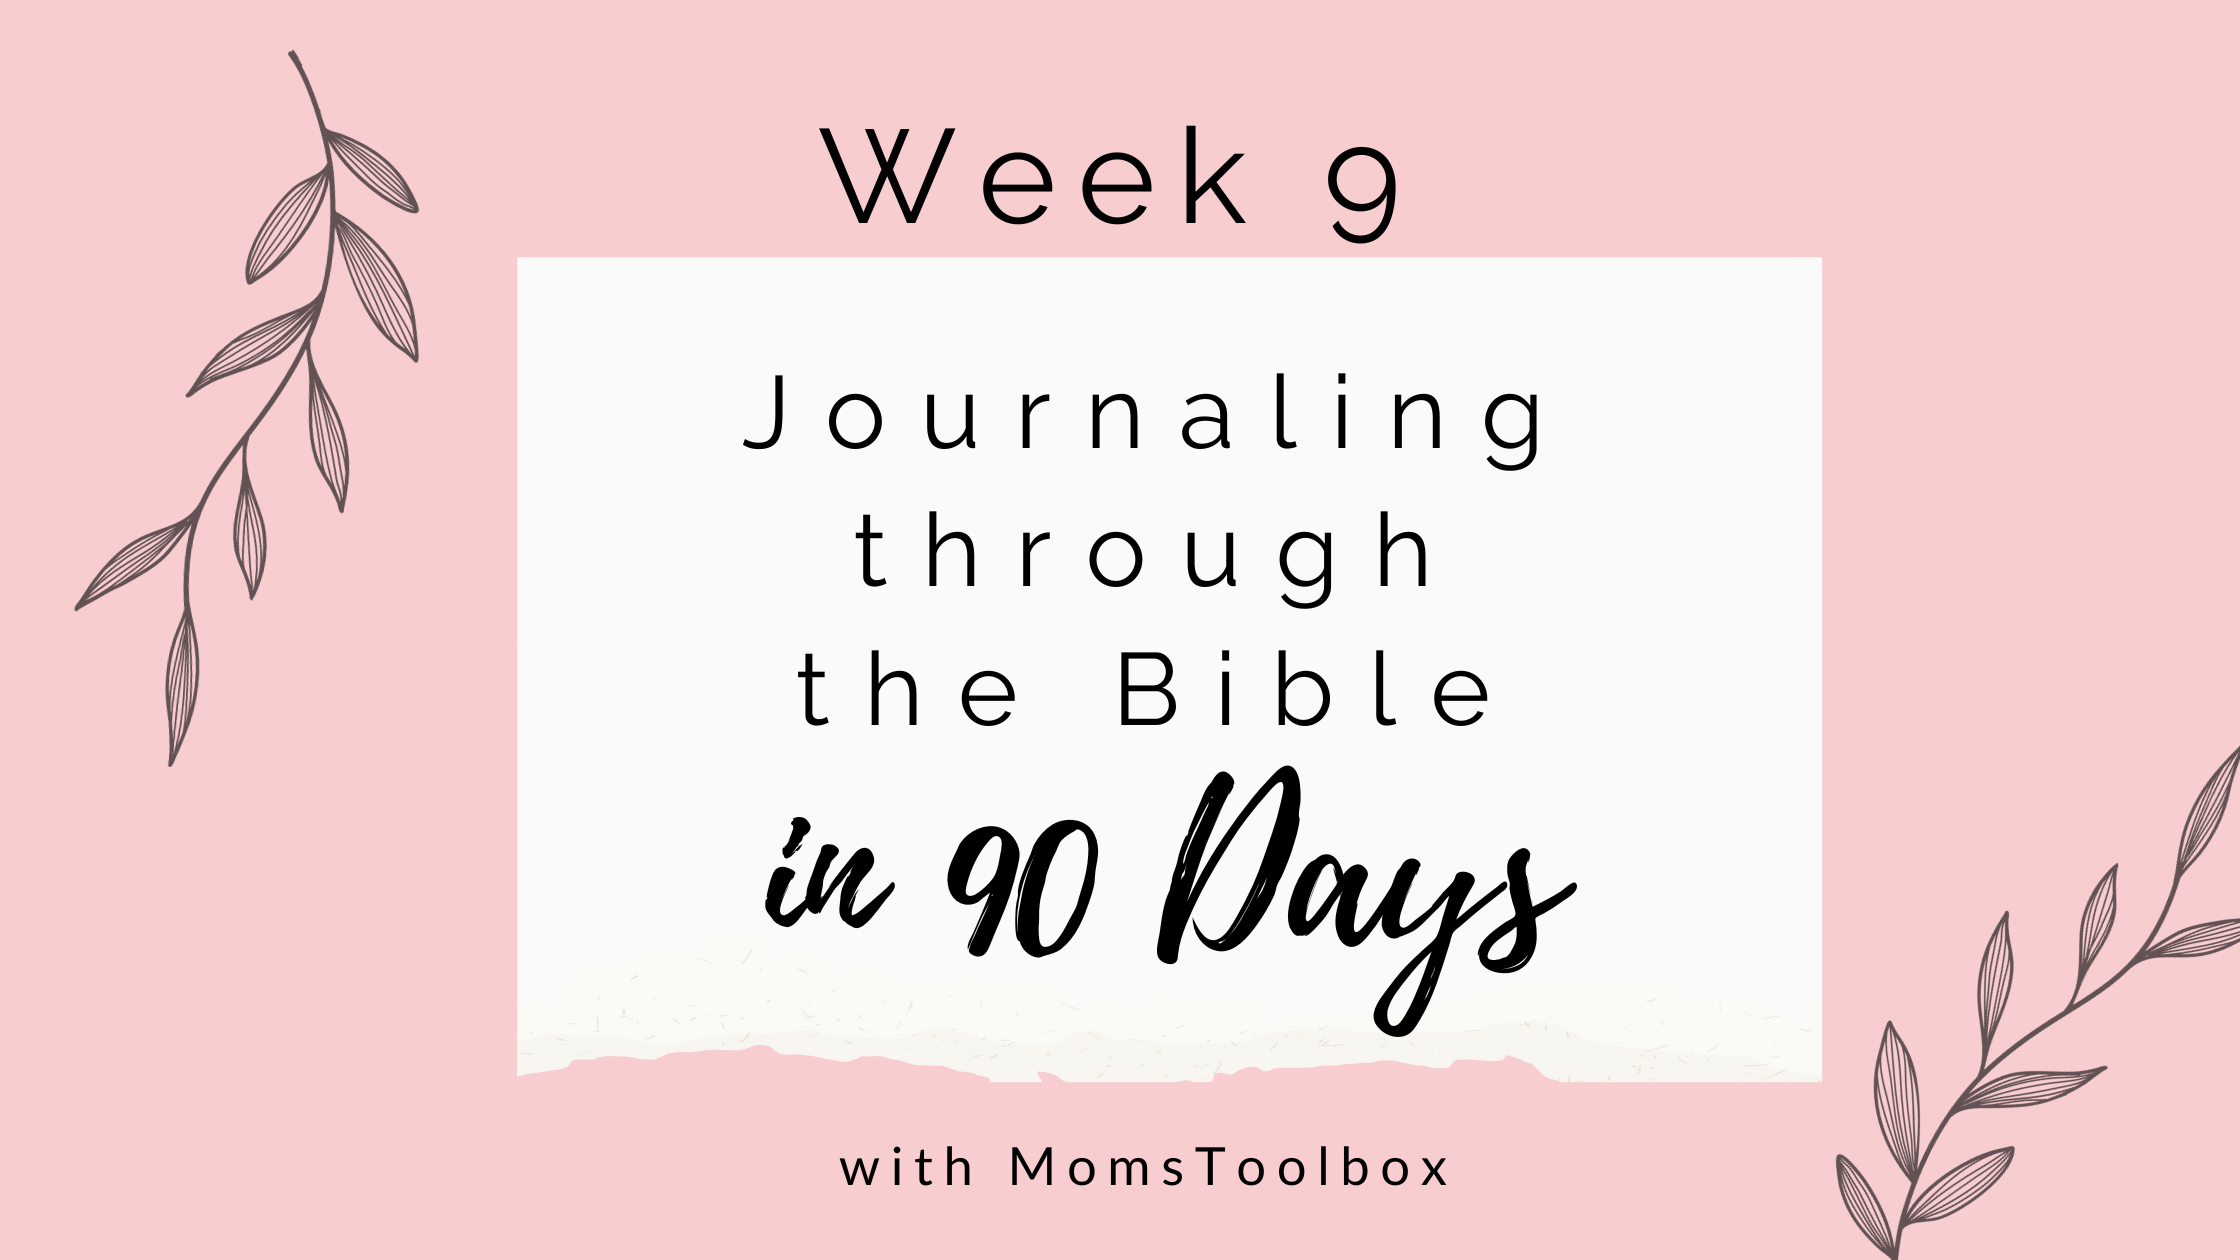 Journaling through the Bible in 90 days: Week 9!